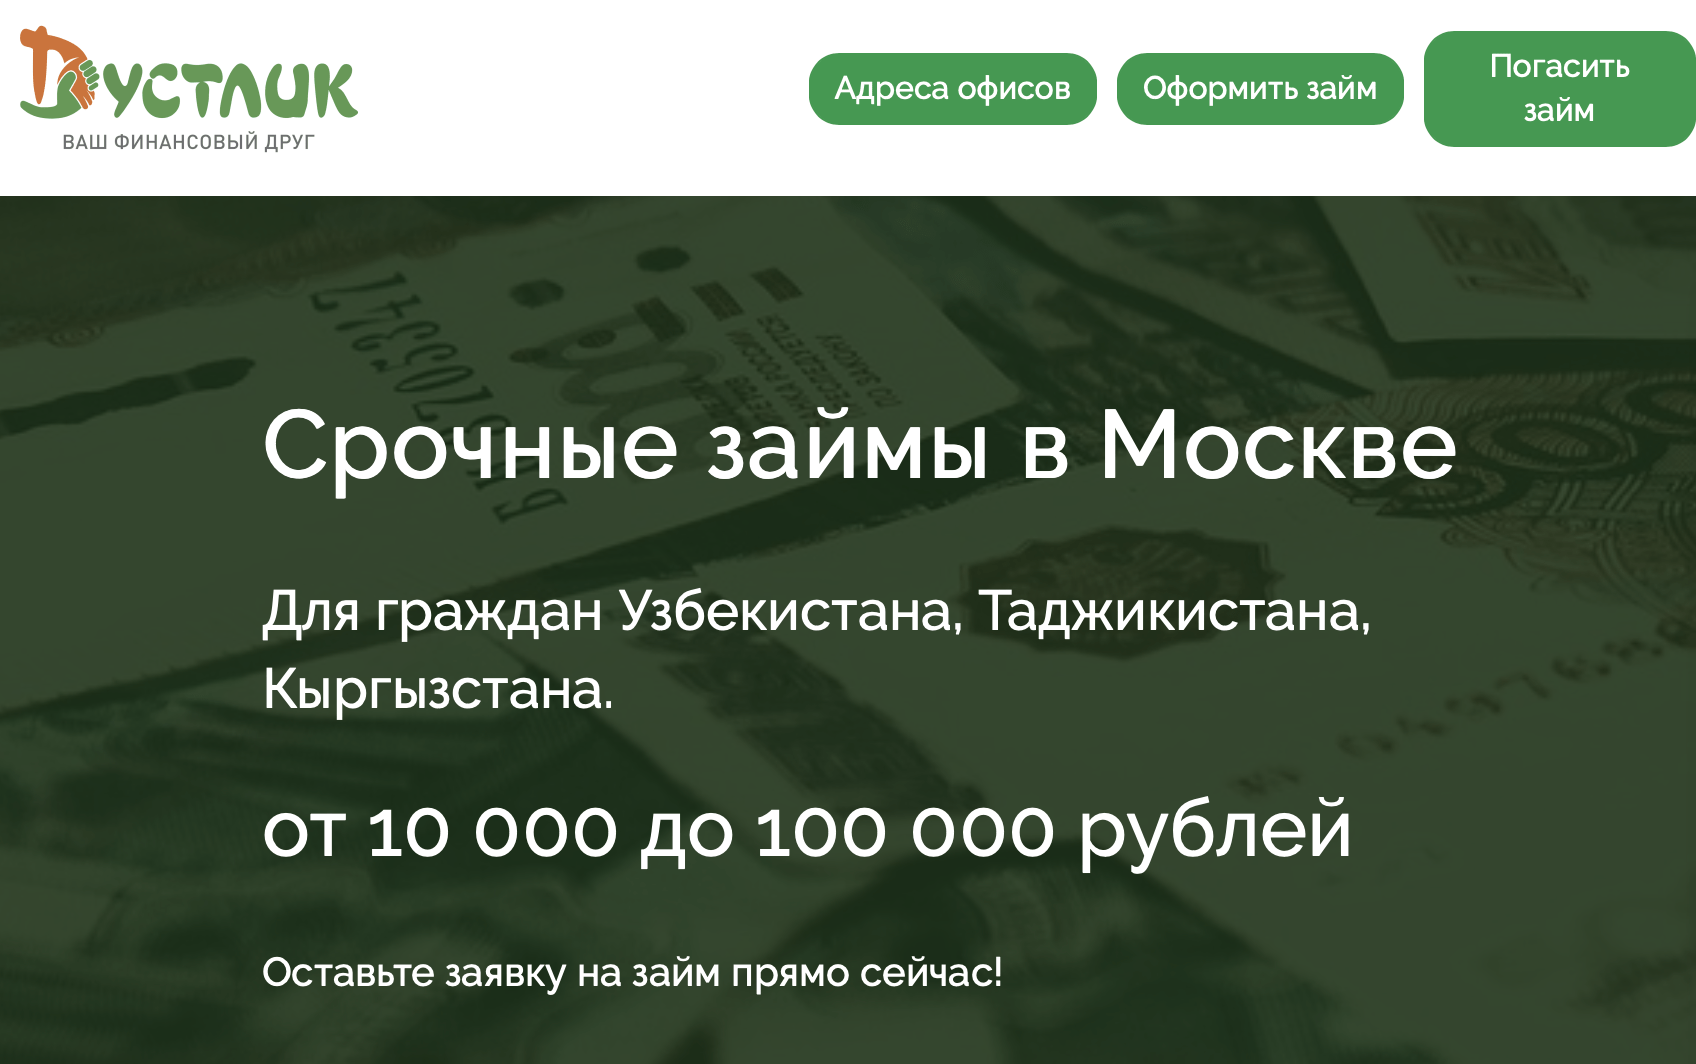 Кредит для иностранных граждан в россии: условия, ставка